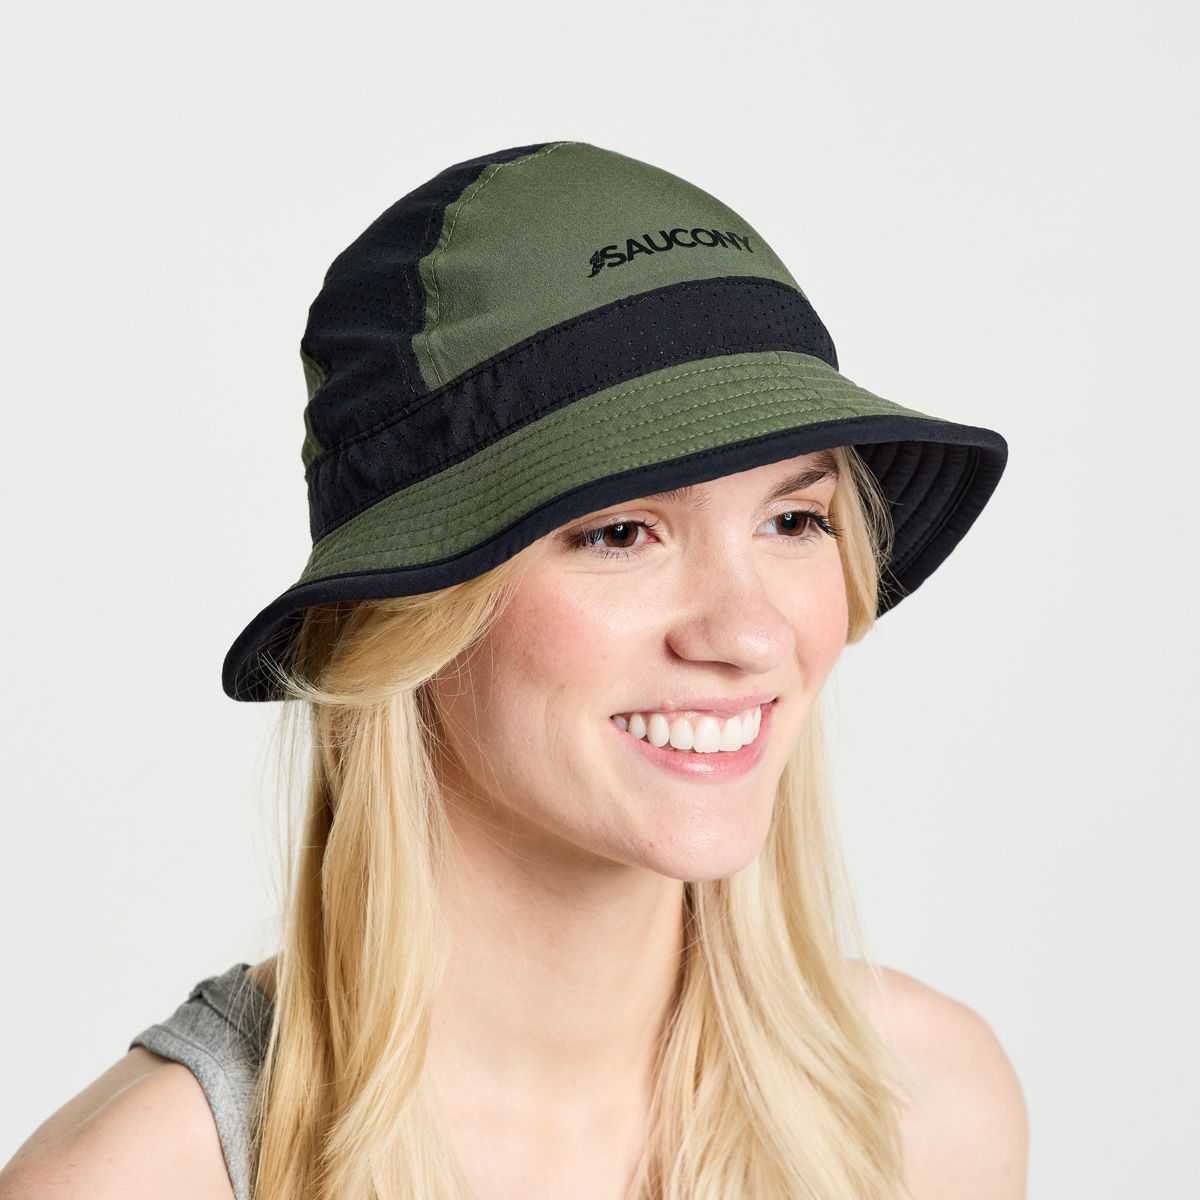 Bucket Hats in Accessories for Women